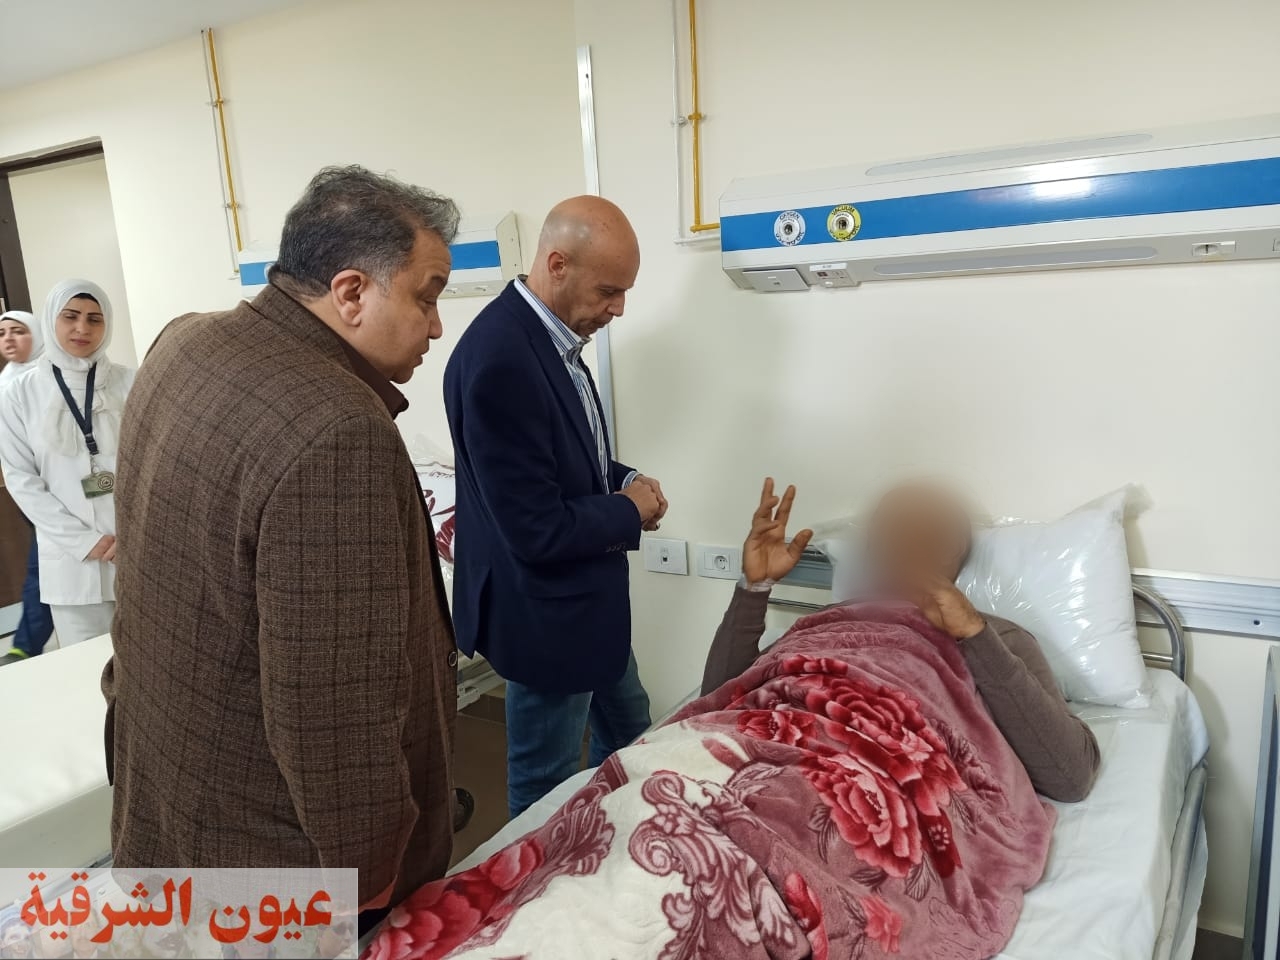 جولة تفقدية لوكيل وزارة الصحة بالشرقية داخل مستشفى حميات الزقازيق